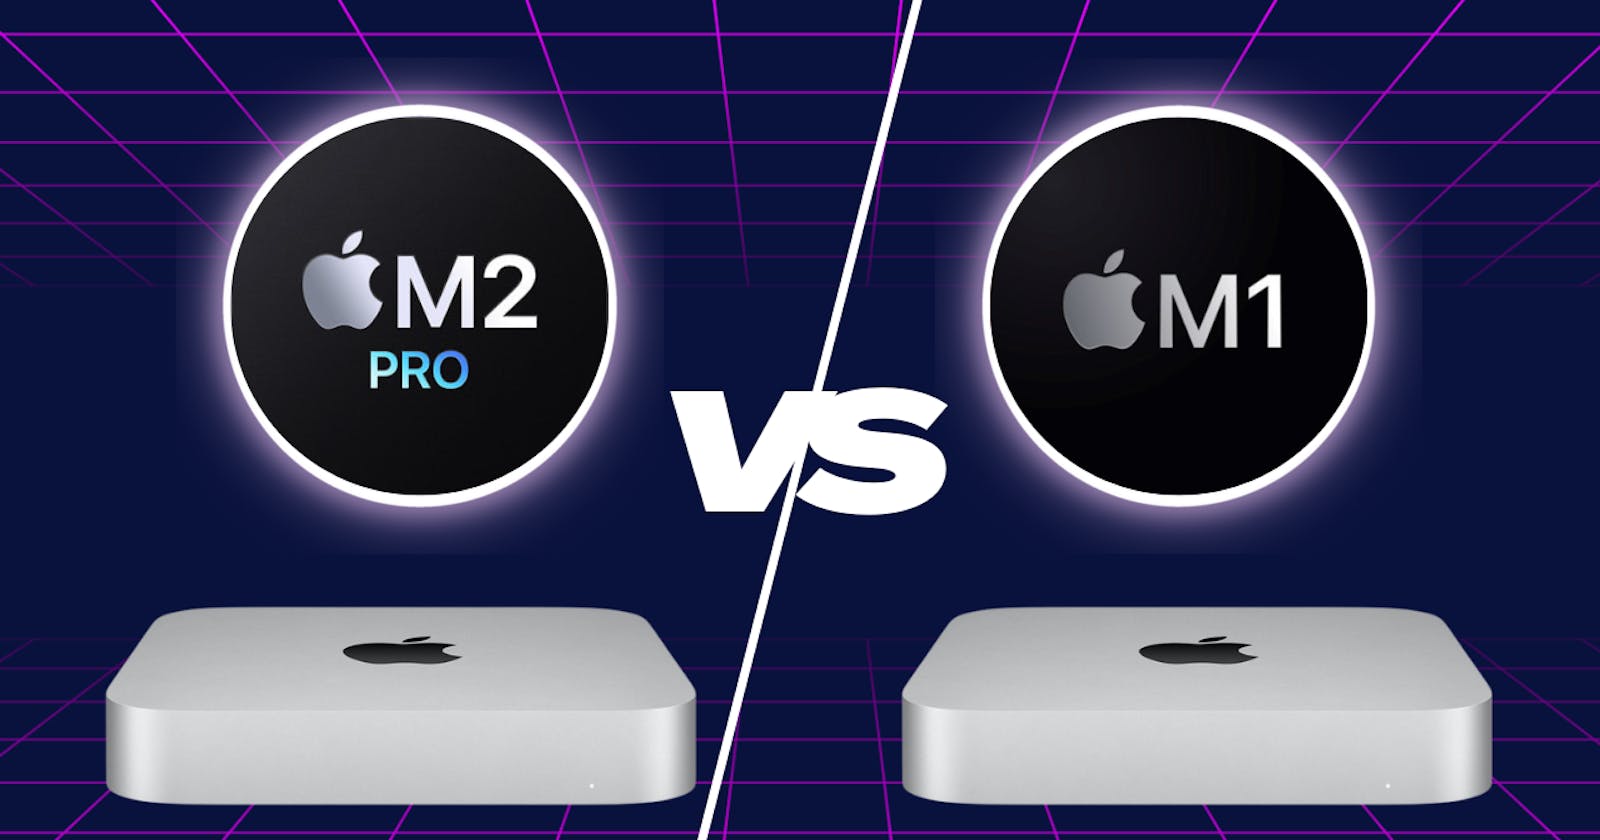 M2 Pro Mac mini VS M1 Mac mini